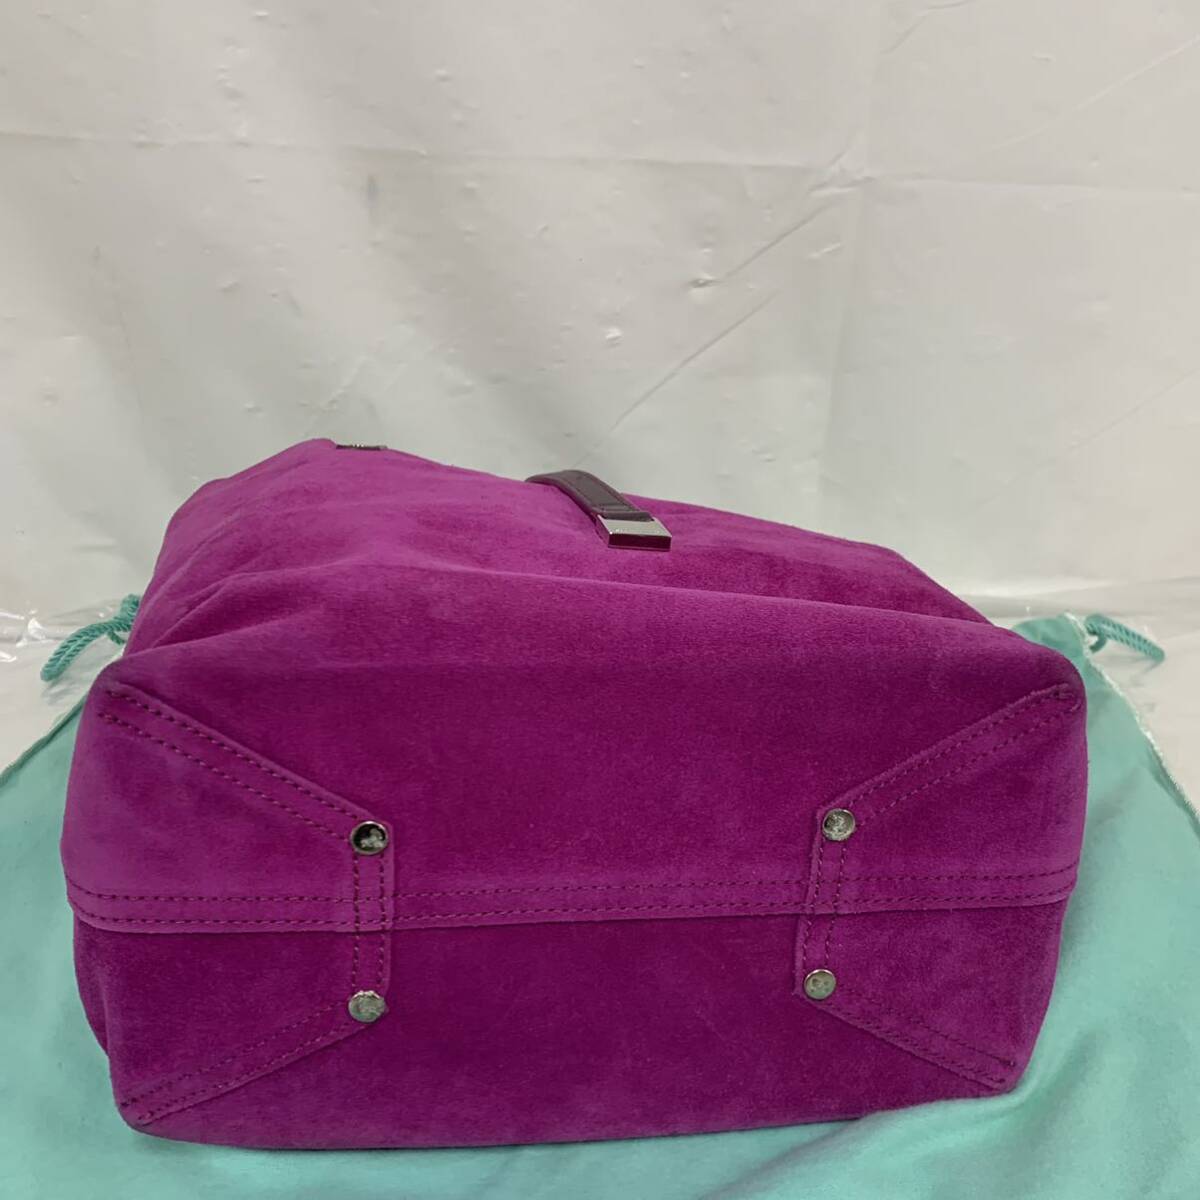 TIFFANY&Co. ティファニー トートバッグ ハンドバッグ メタリックレザー スエード パープル 紫 付属ポーチ保存袋 カ4_画像3